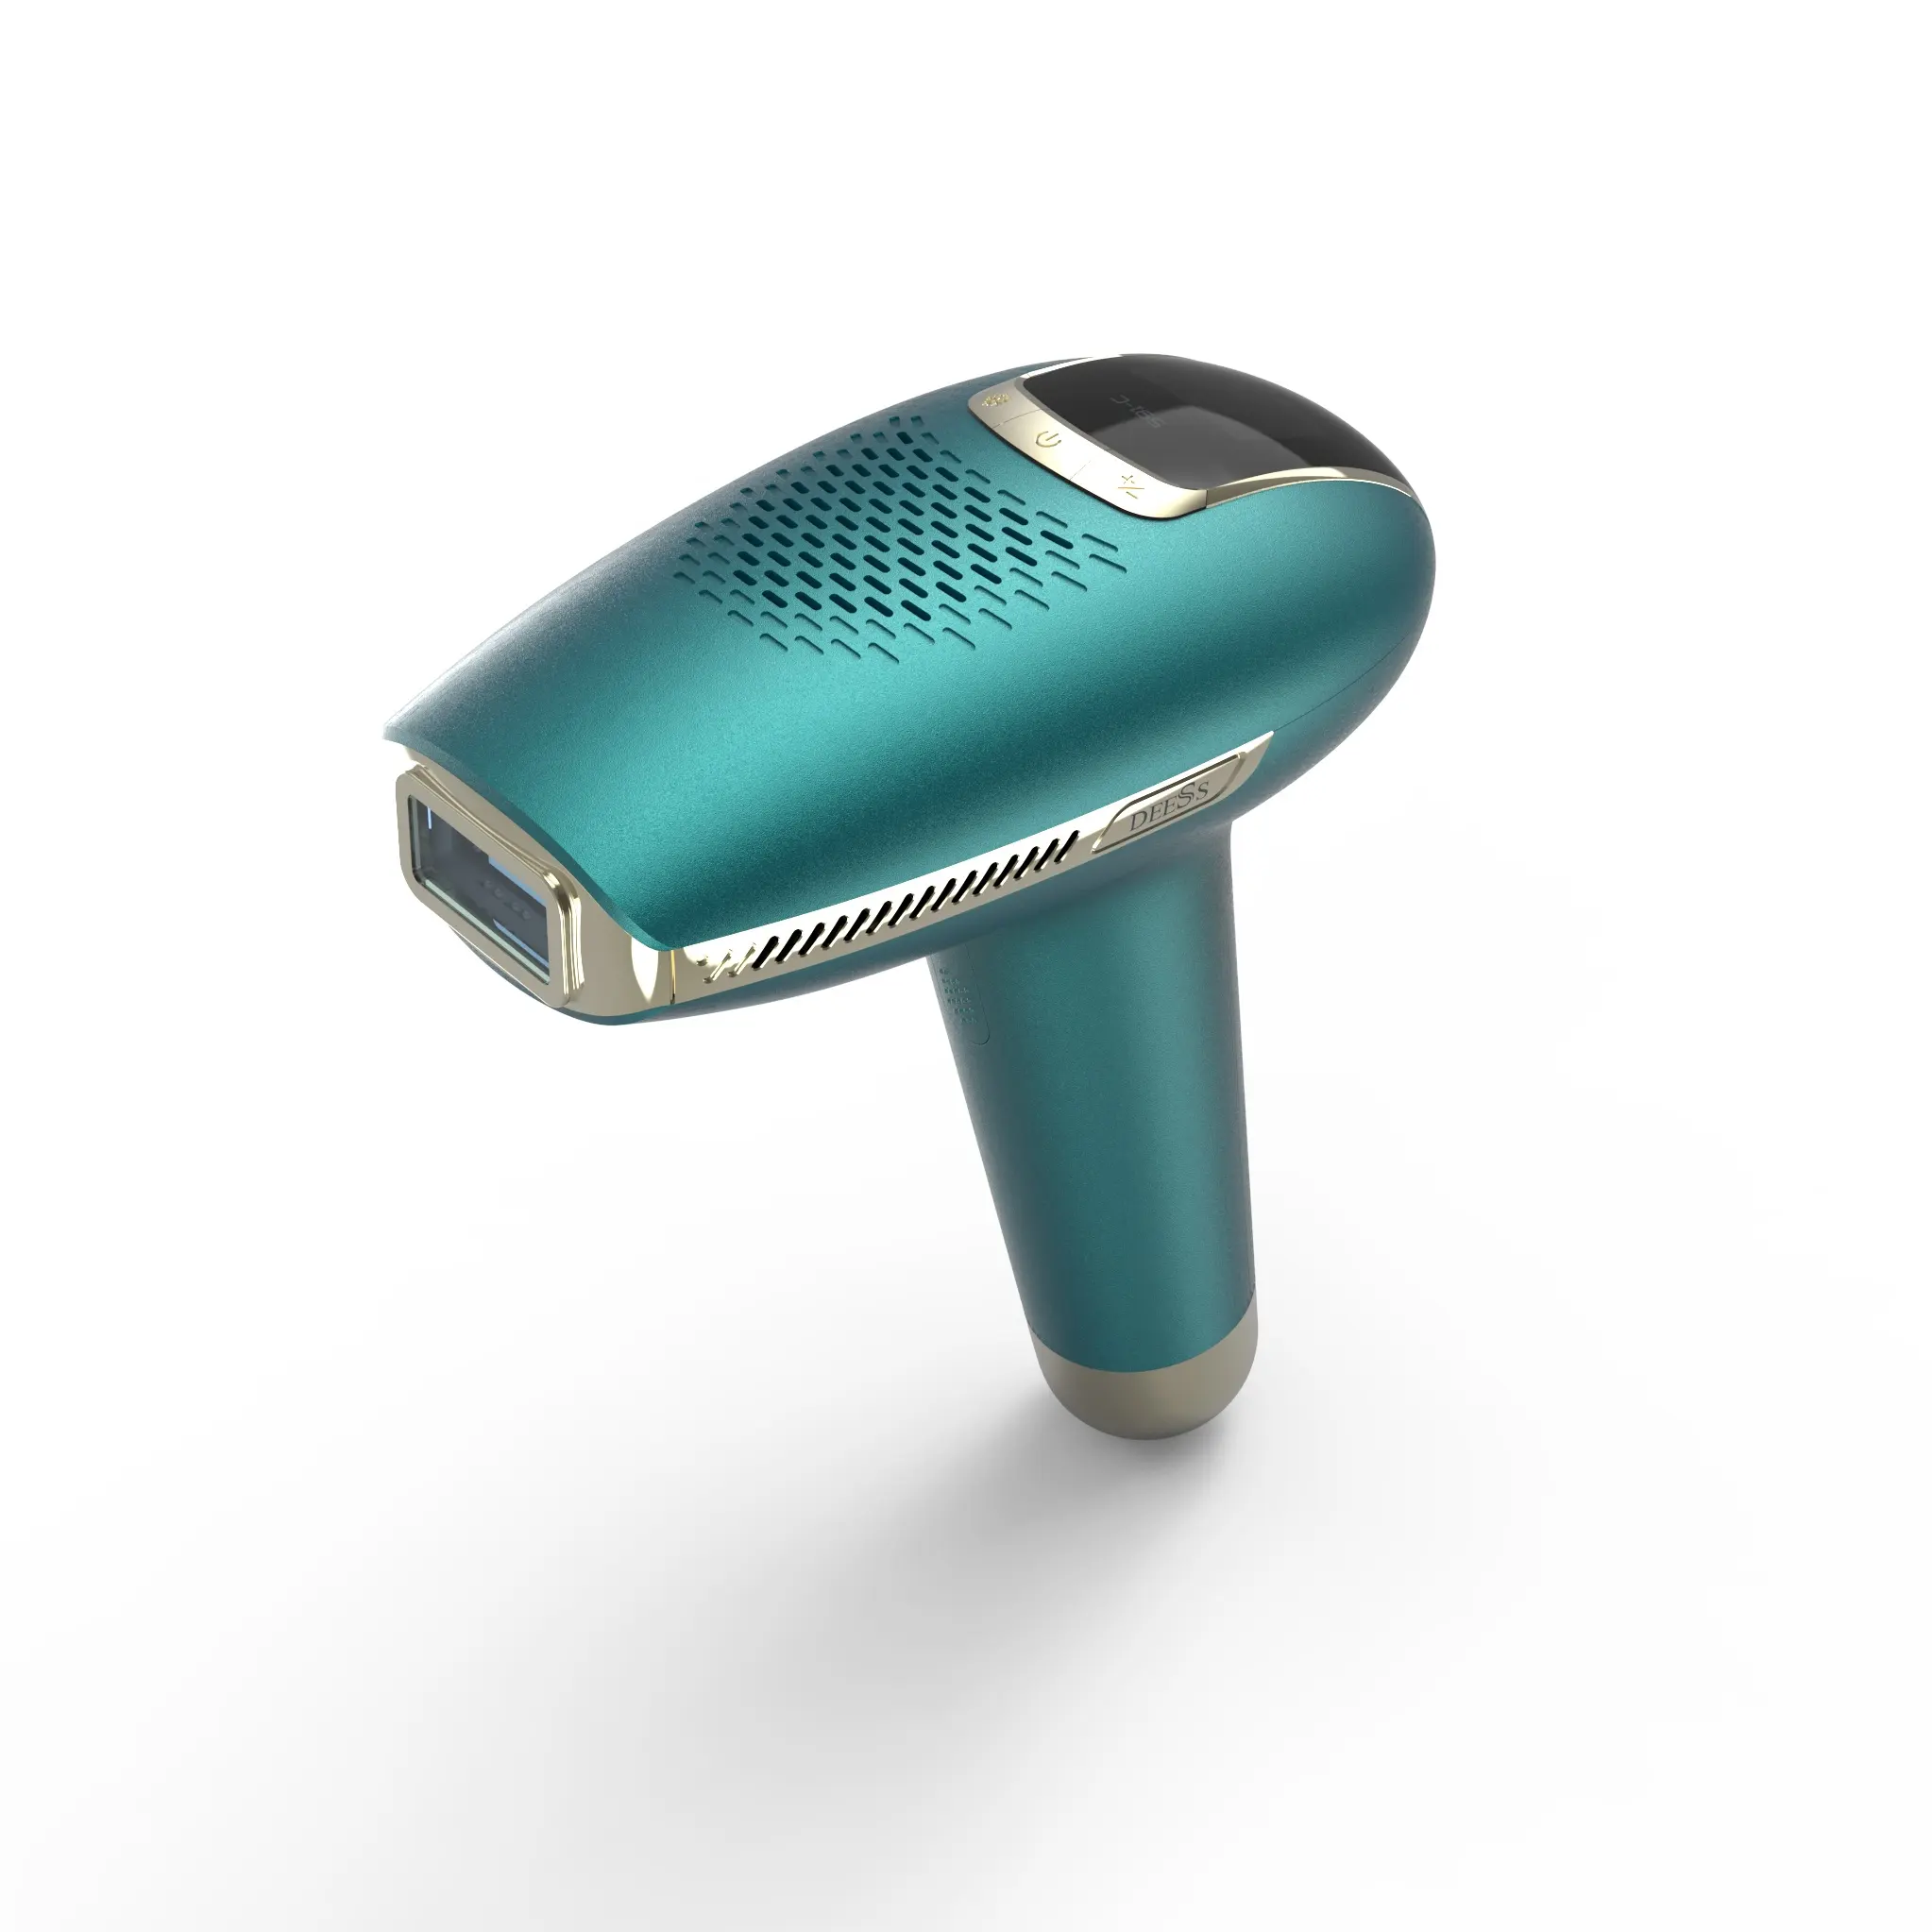 DEESS GP591E-جهاز إزالة الشعر بالليرز في المنزل, أداة ليزر لإزالة الشعر بصورة دائمة تعمل بالليزرipl غير محدودة